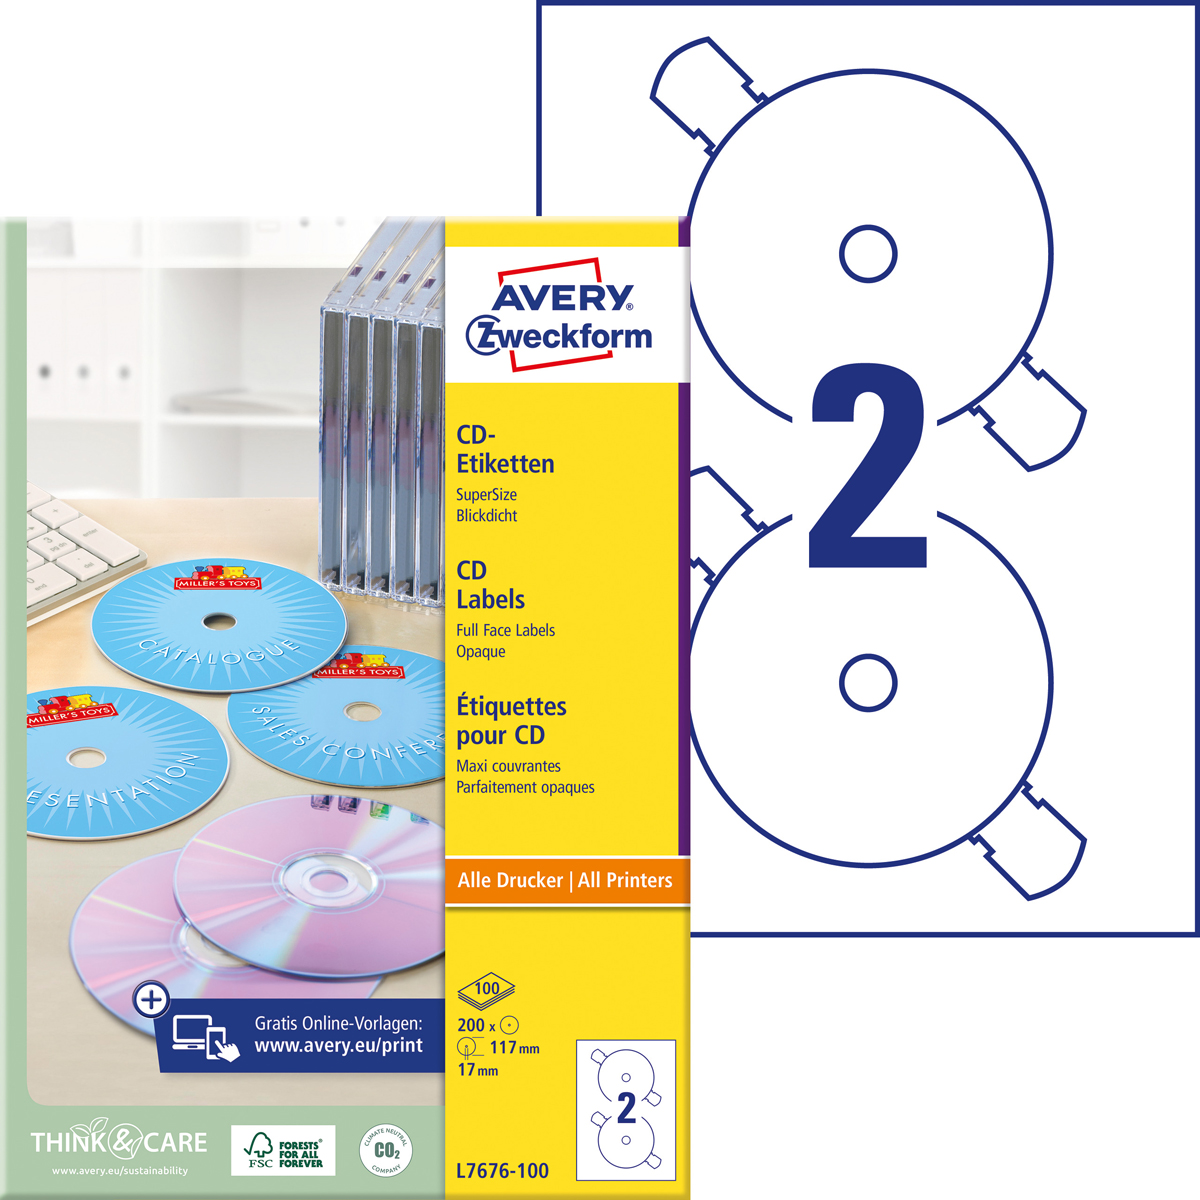 Avery Zweckform L7676-100 CD-Etiketten SuperSize,, Ø 117 mm, CDs, 100 Bogen/200 Etiketten, weiß